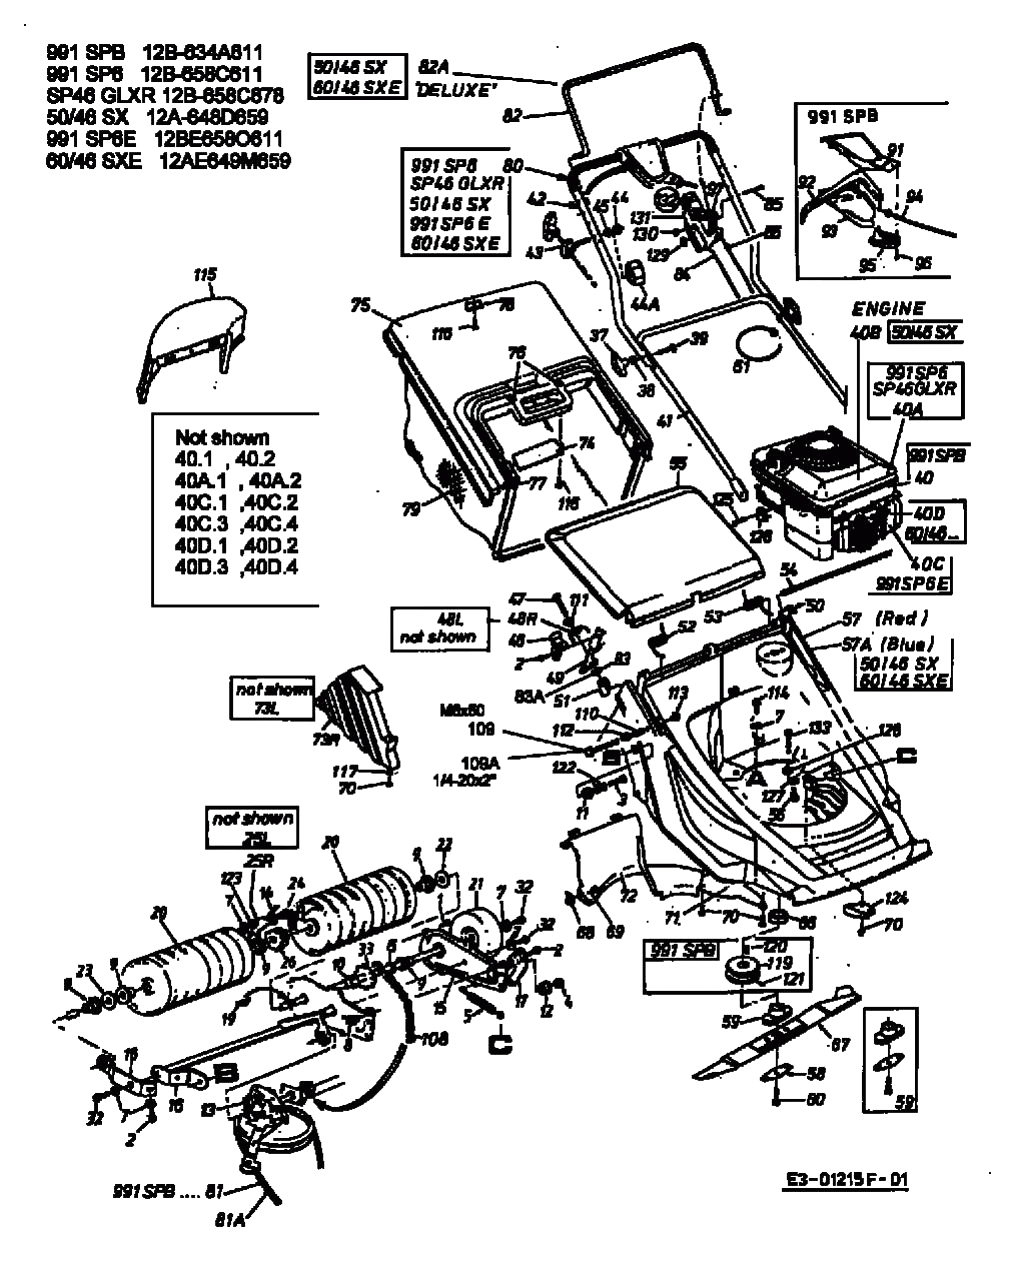 MTD Артикул 12B-658C678 (год выпуска 2003). Основная деталировка